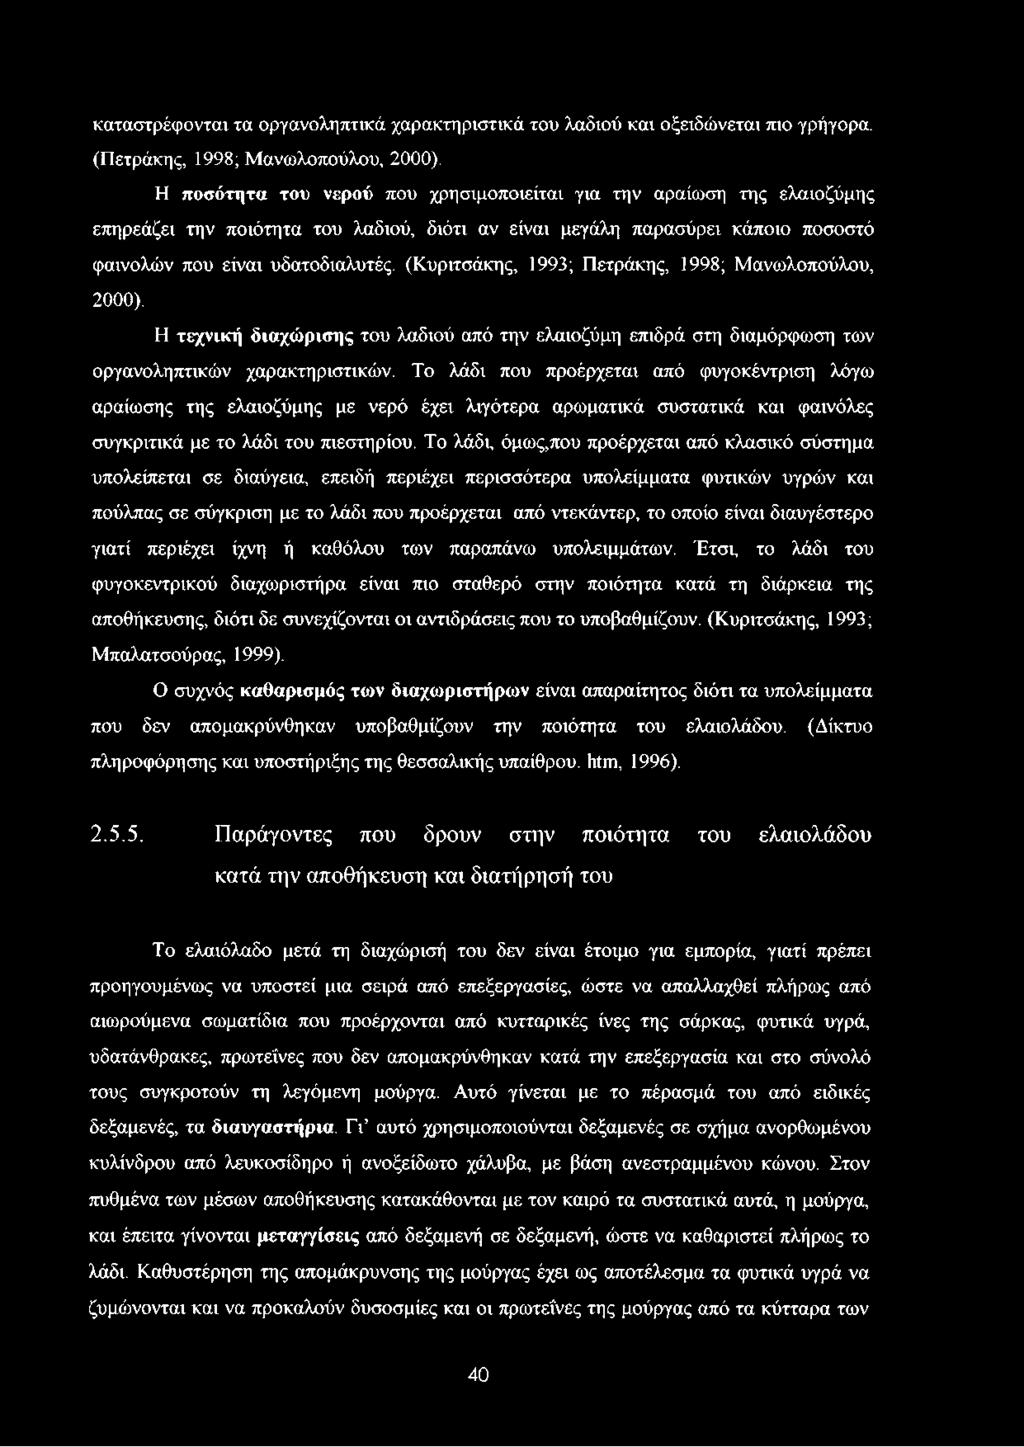 (Κυριτσάκης, 1993; Πετράκης, 1998; Μανωλοπούλου, 2000). Η τεχνική διαχώρισης του λαδιού από την ελαιοζύμη επιδρά στη διαμόρφωση των οργανοληπτικών χαρακτηριστικών.